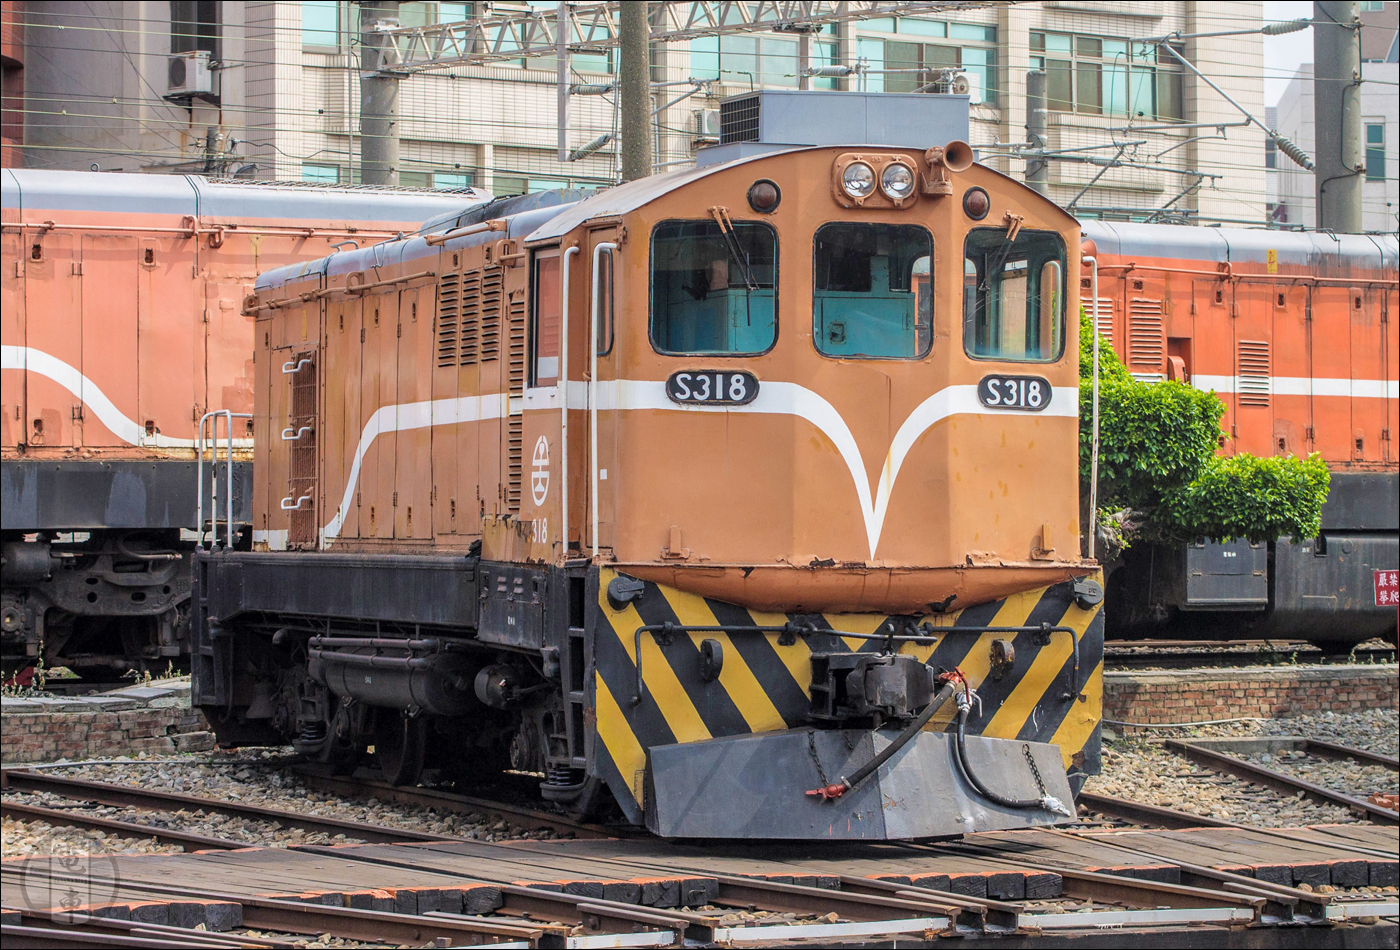 A TRA utolsó üzemképes S300-as sorozatú mozdonya a changhuai körfűtőház tárolóvágányán.